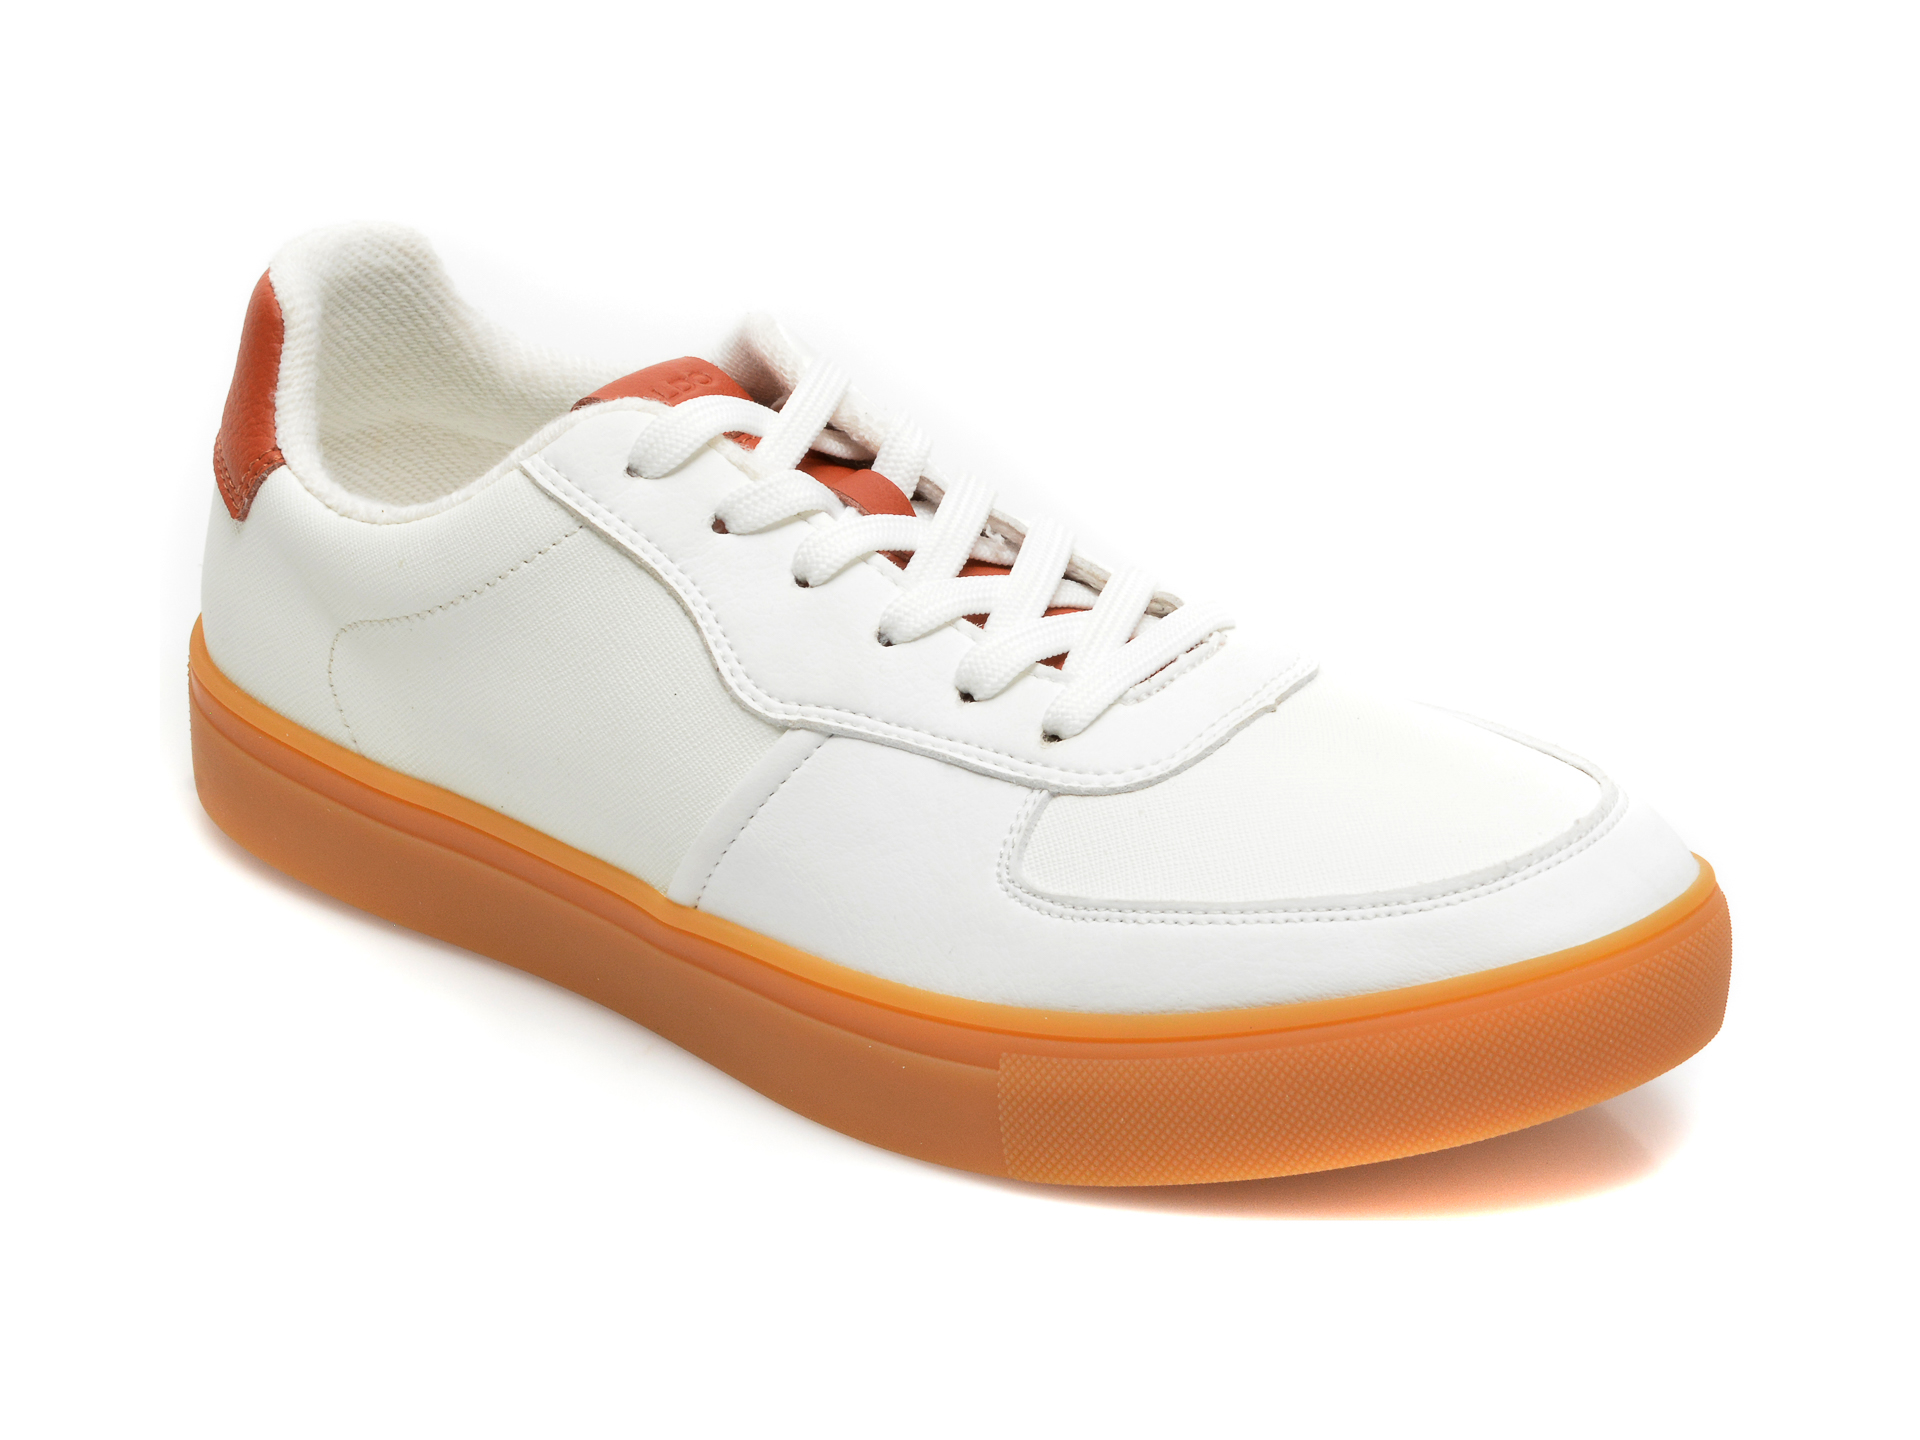 Pantofi sport ALDO albi, KION100, din piele ecologica Aldo imagine reduceri